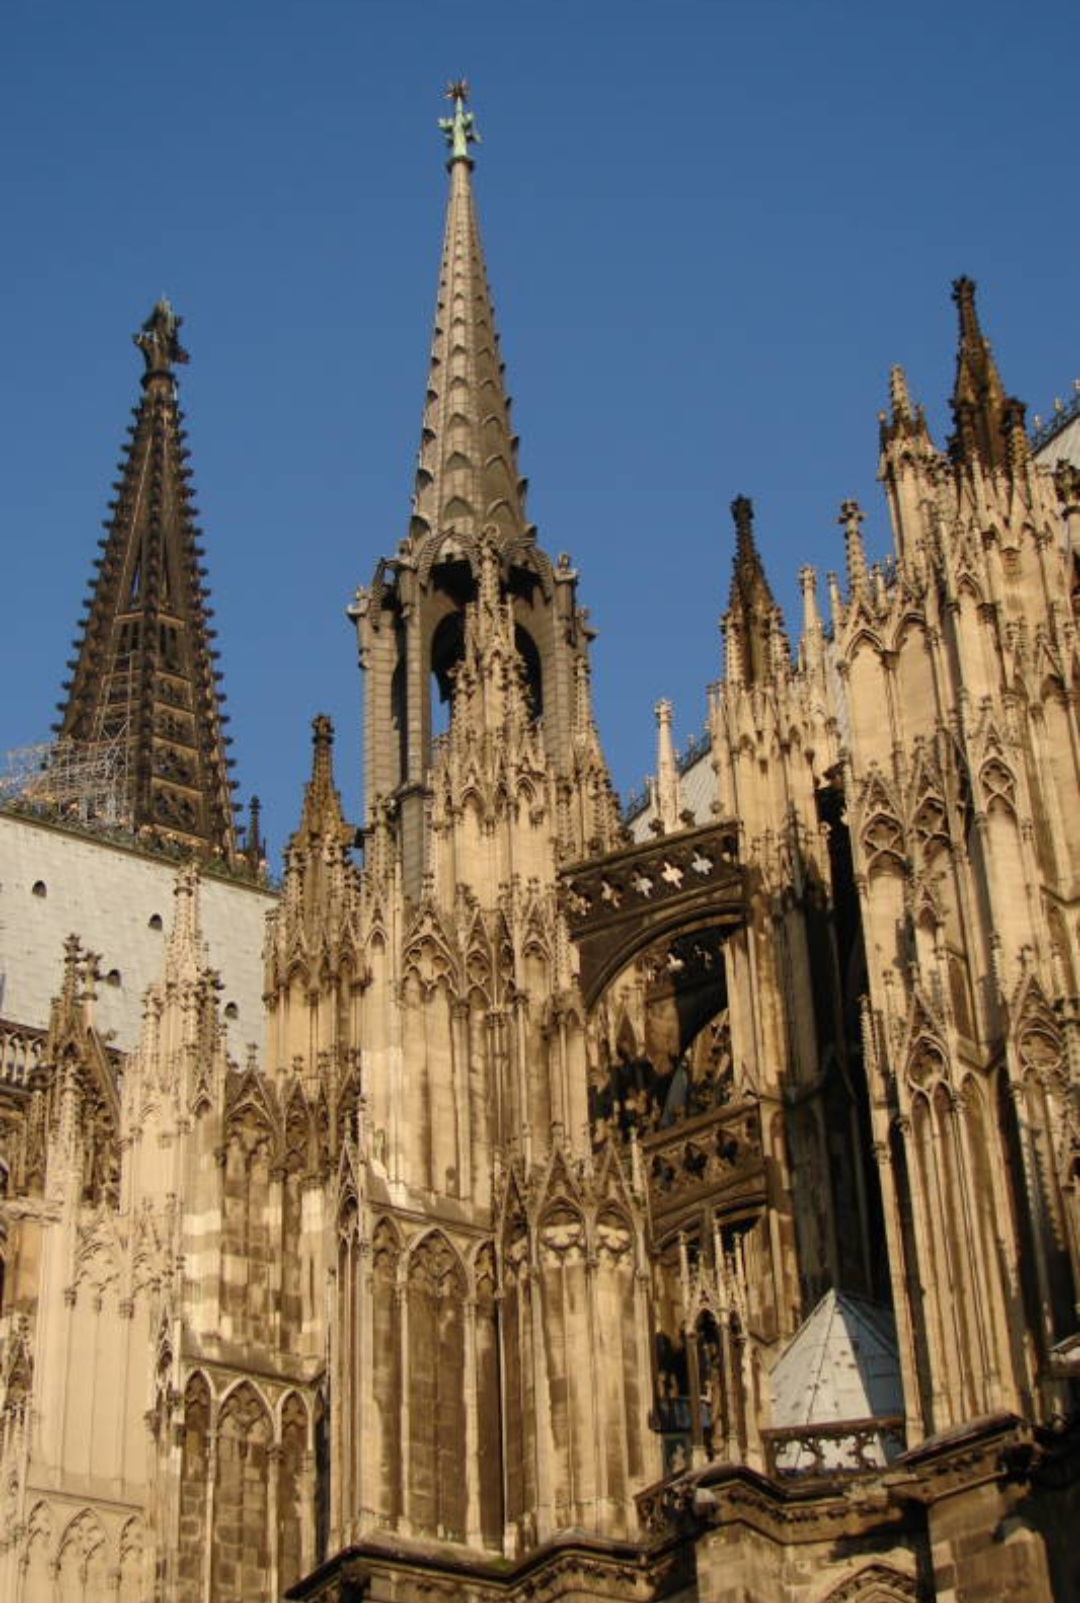 A Catedral de Colônia, em Colônia, na Alemanha, começou a ser construída em 1248 e demorou mais de 600 anos até concluir suas obras. Reprodução: Flipar